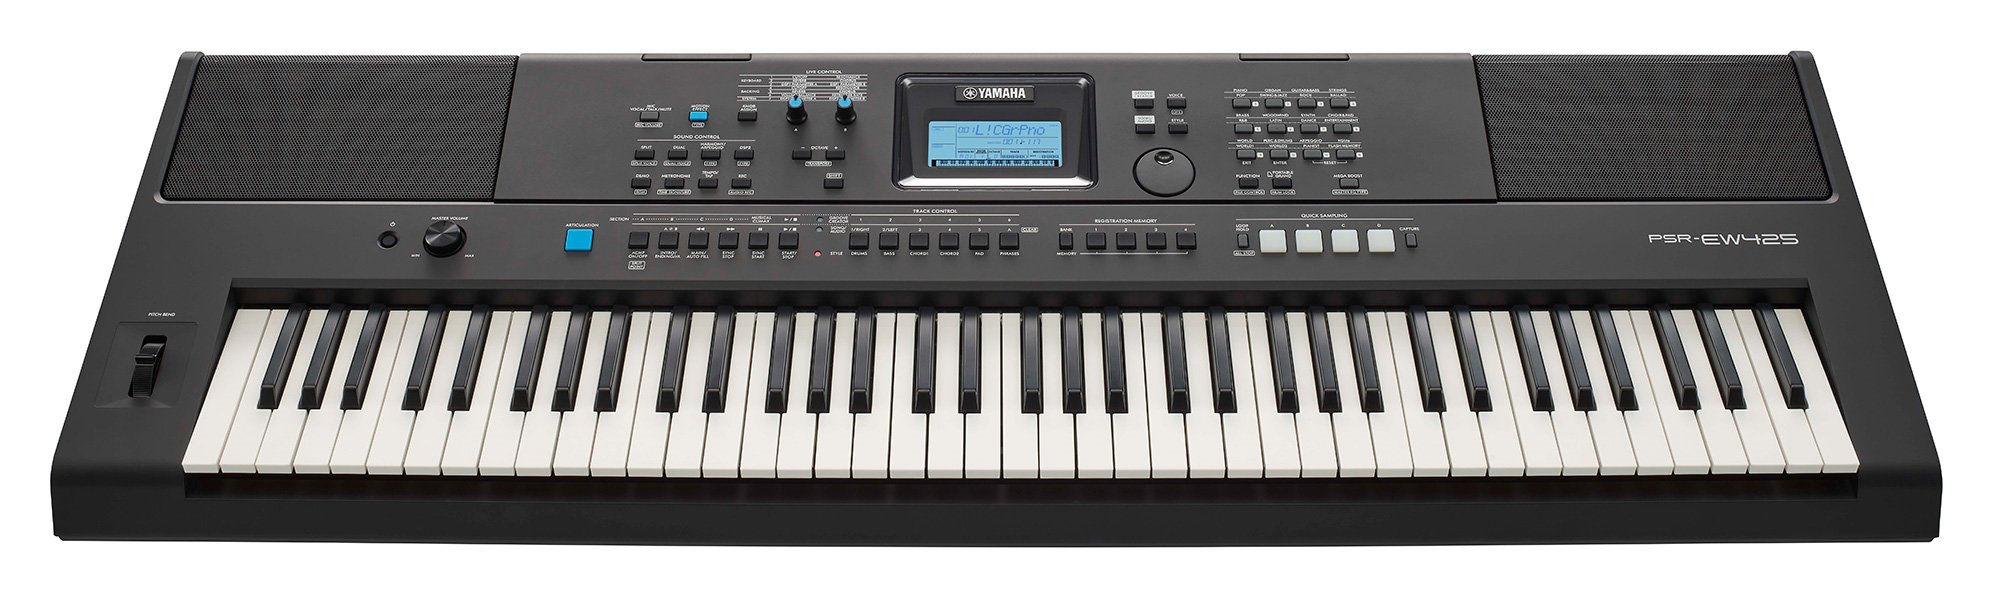 Yamaha PSR-EW425 76-key Portable Keyboard